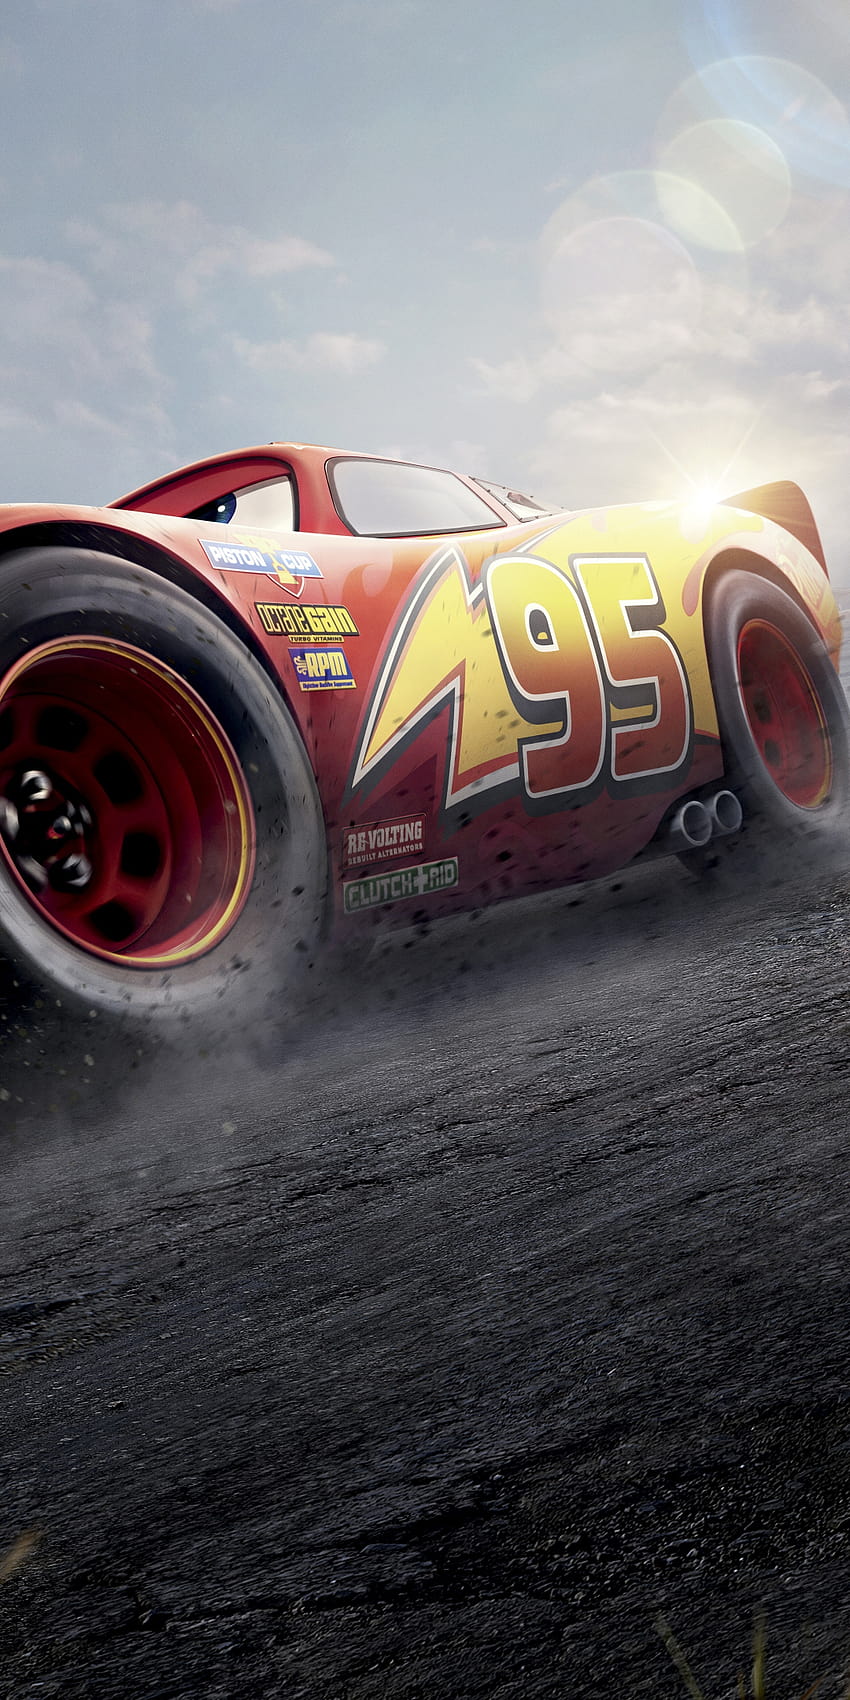 HD wallpaper Lightning McQueen screensaver Cars 3 Animation Pixar 4K   Wallpaper Flare